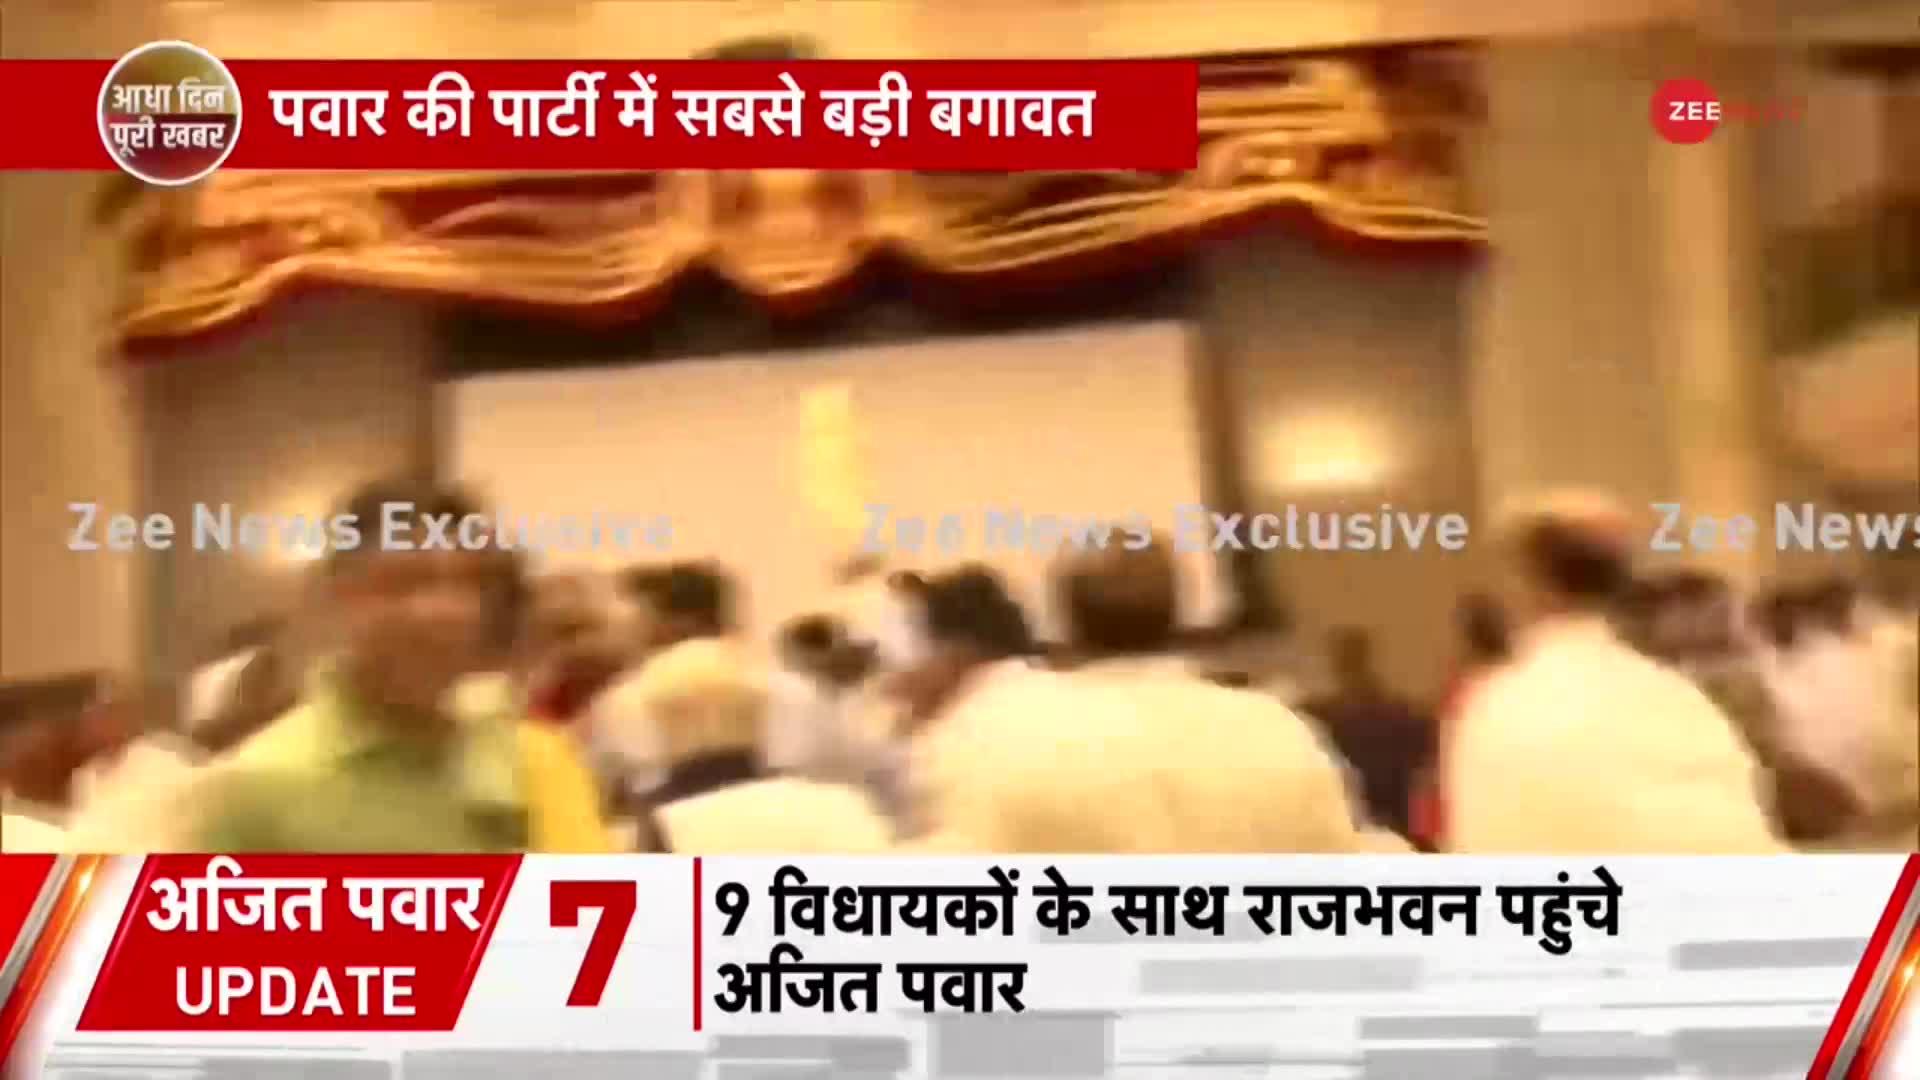 MAHARASTRA BREAKING: Sharad Pawar की पार्टी में सबसे बड़ी बगावत, महाअघाटी में फूट..NCP में टूट